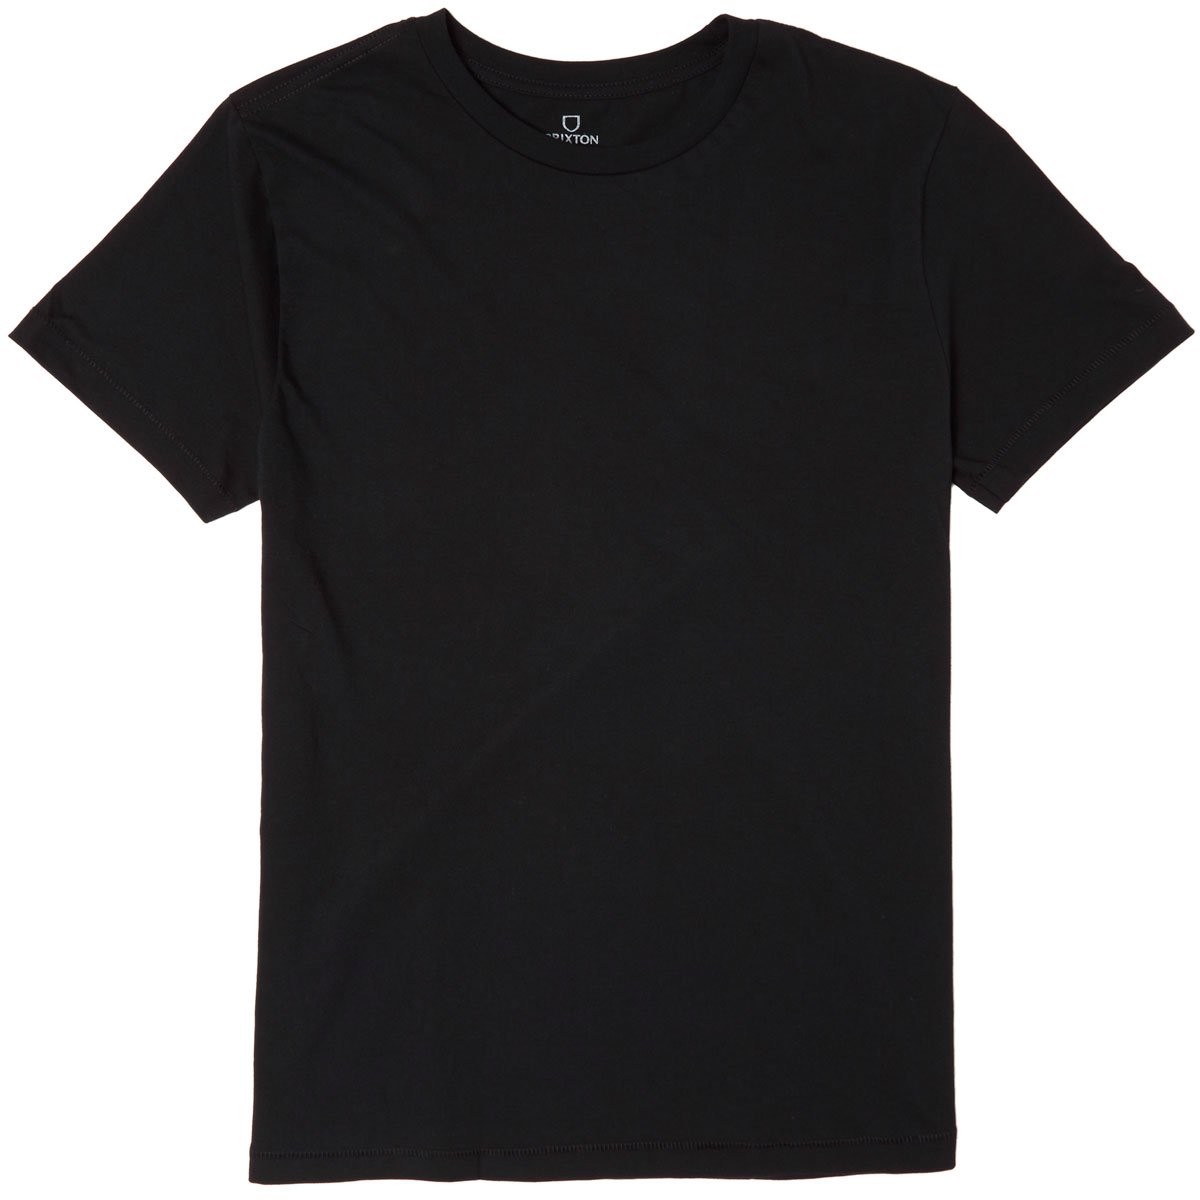 Brixton Basic T-Shirt - Black image 1